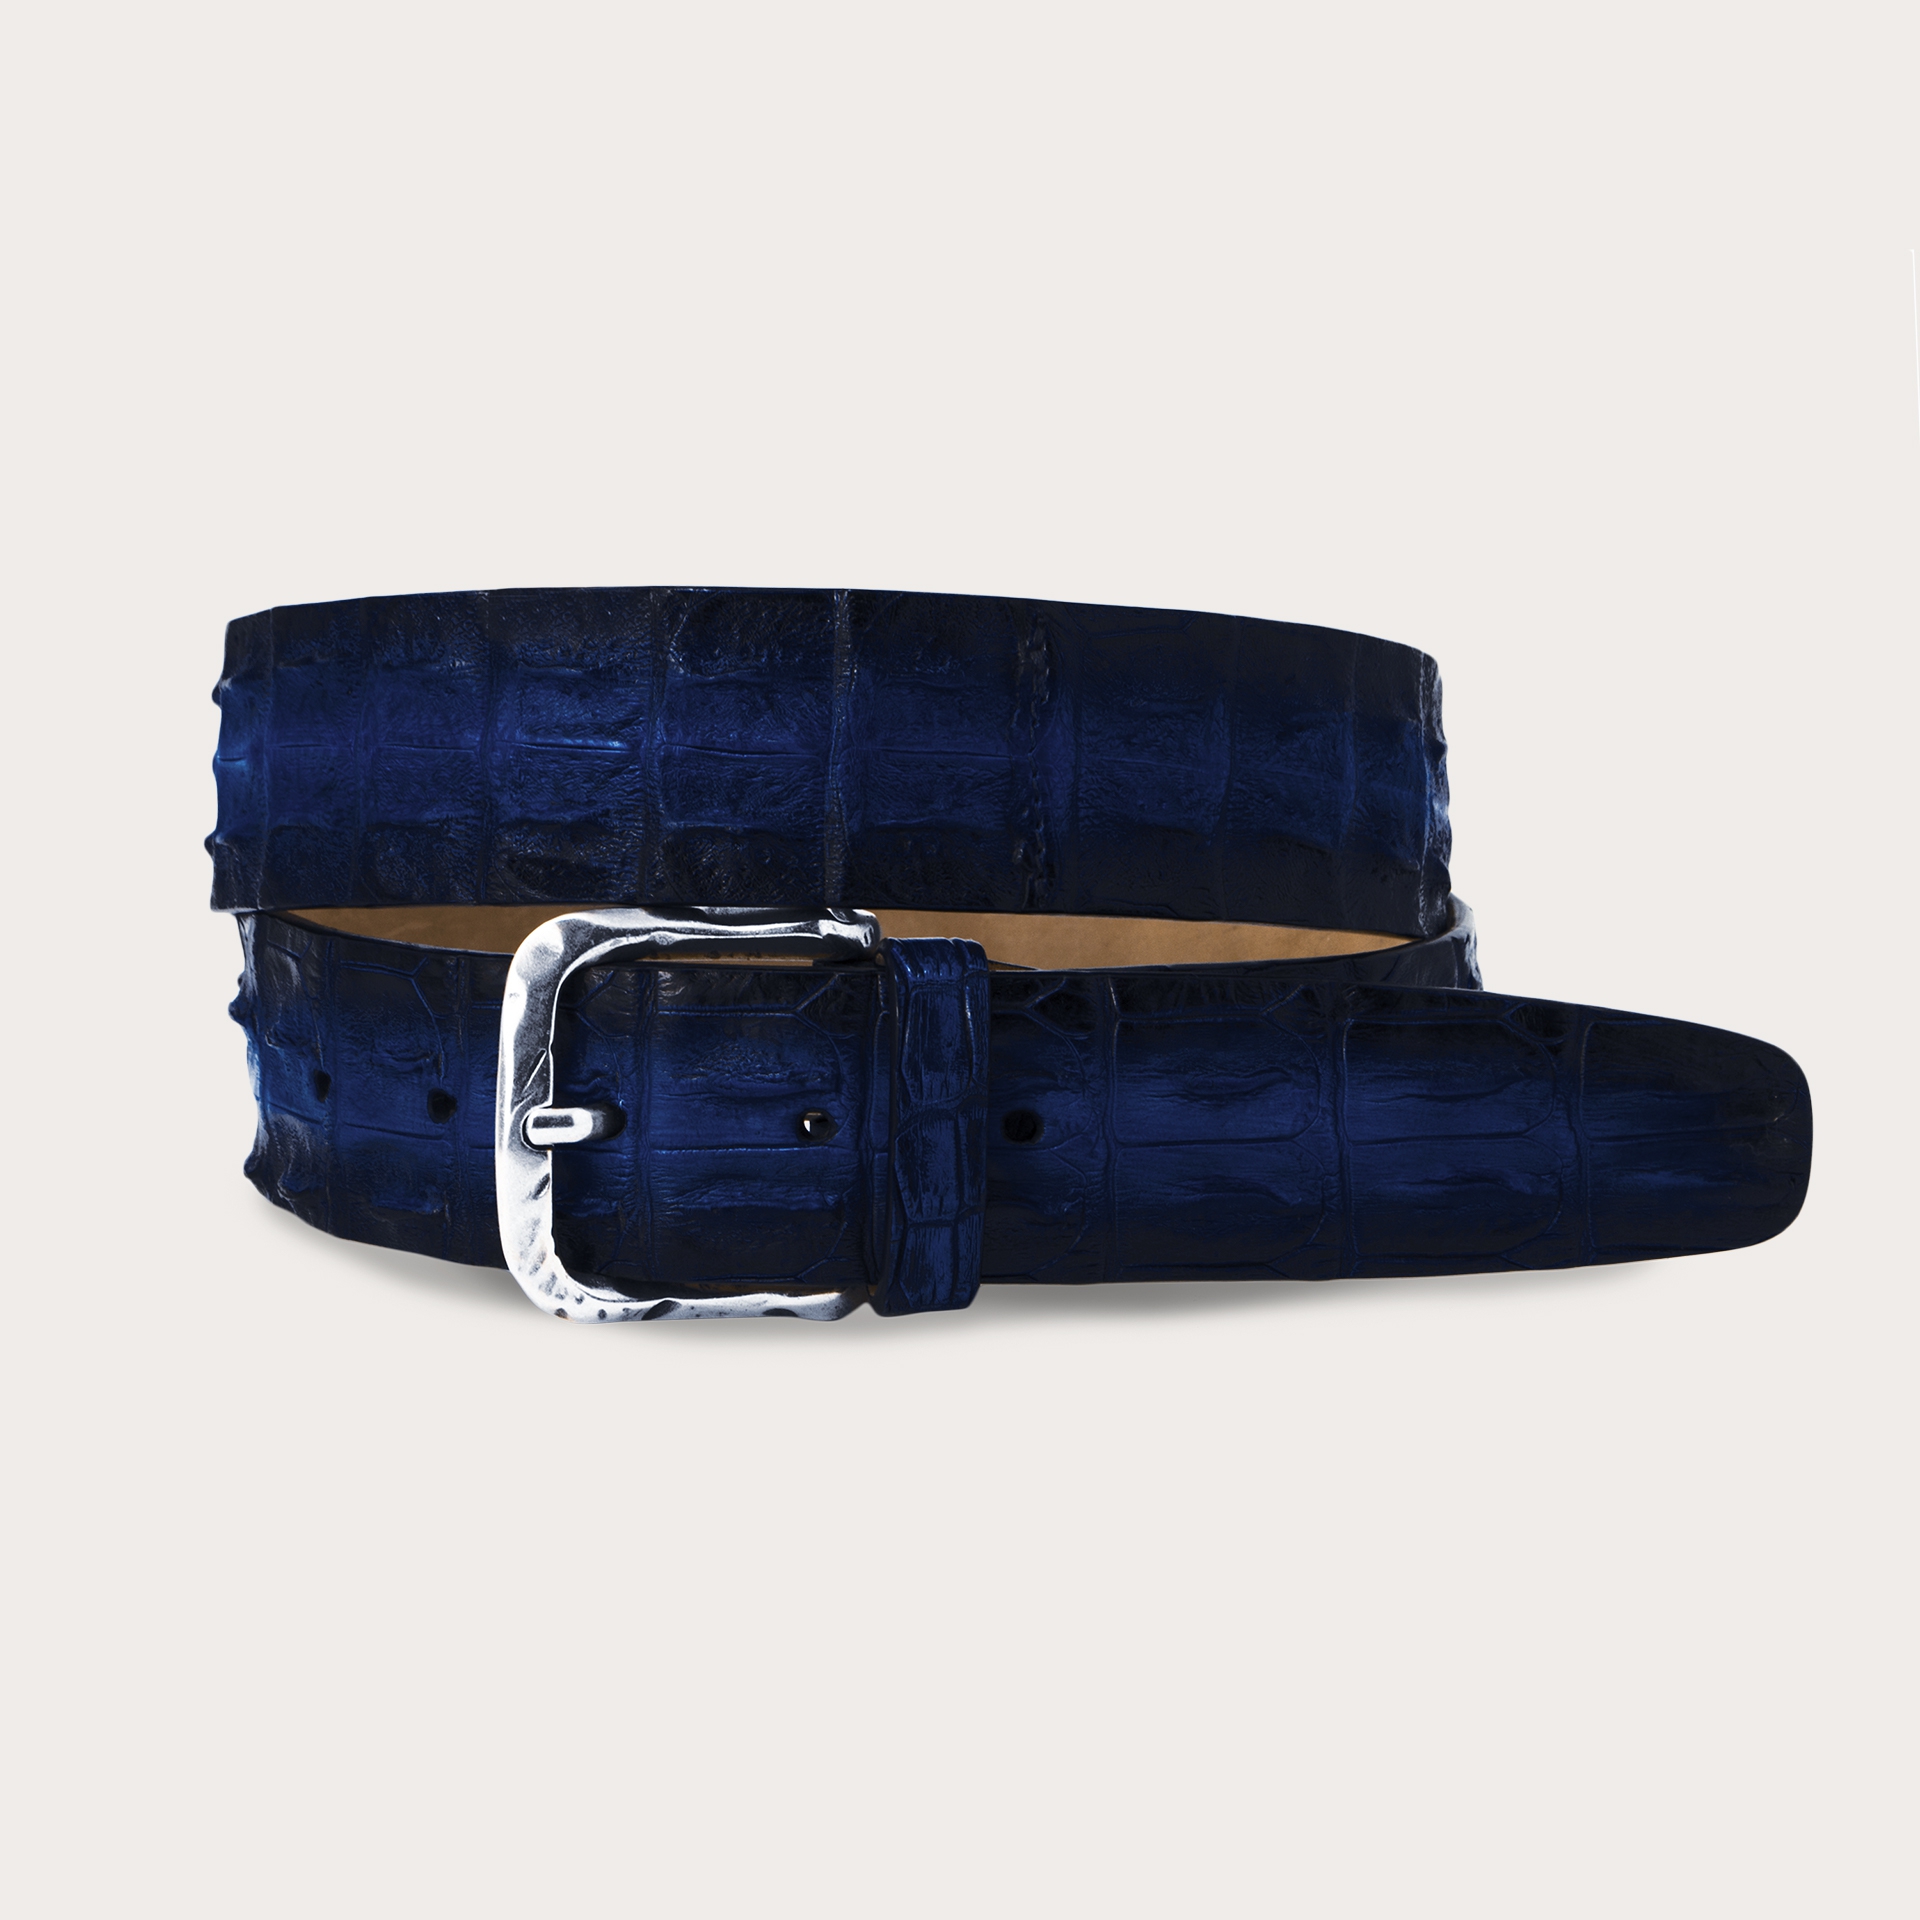 BRUCLE Cinturón de cocodrilo coloreado a mano, azul